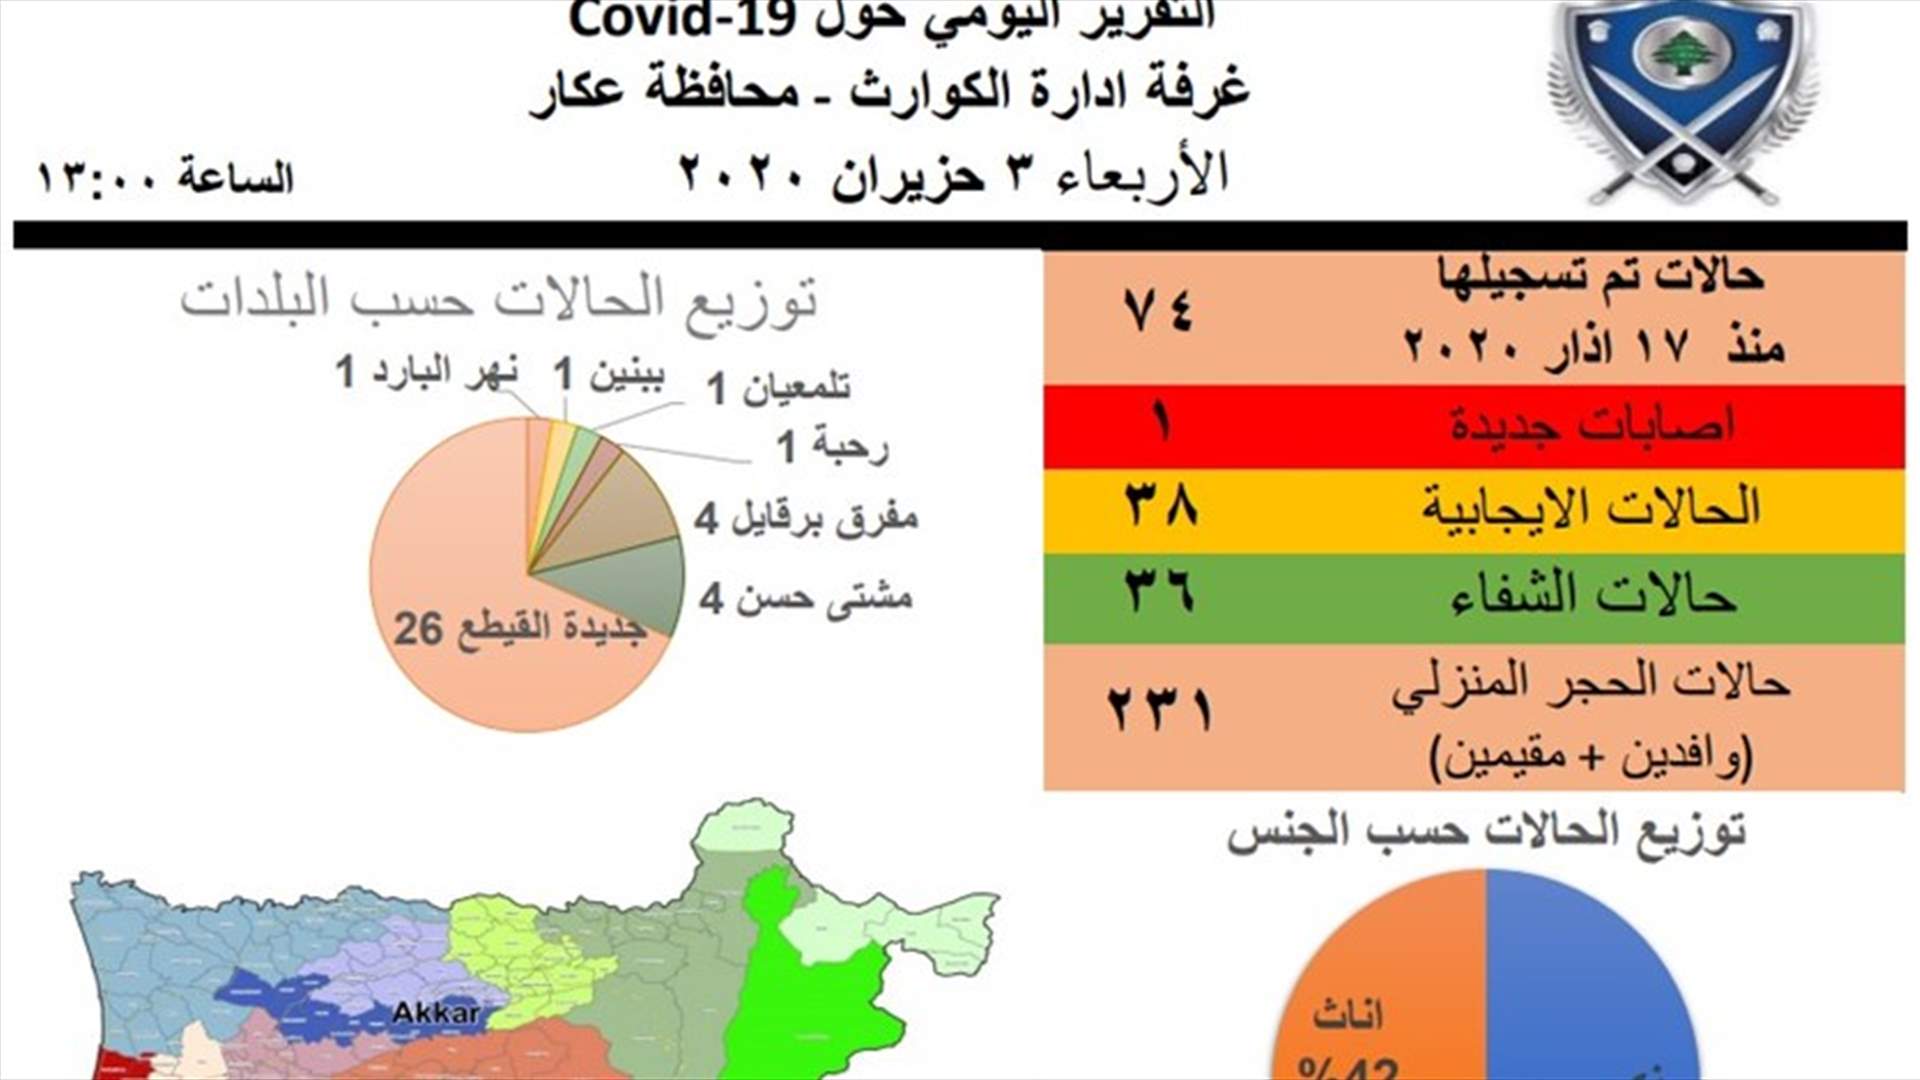 اصابة جديدة بفيروس كورونا في محافظة عكار